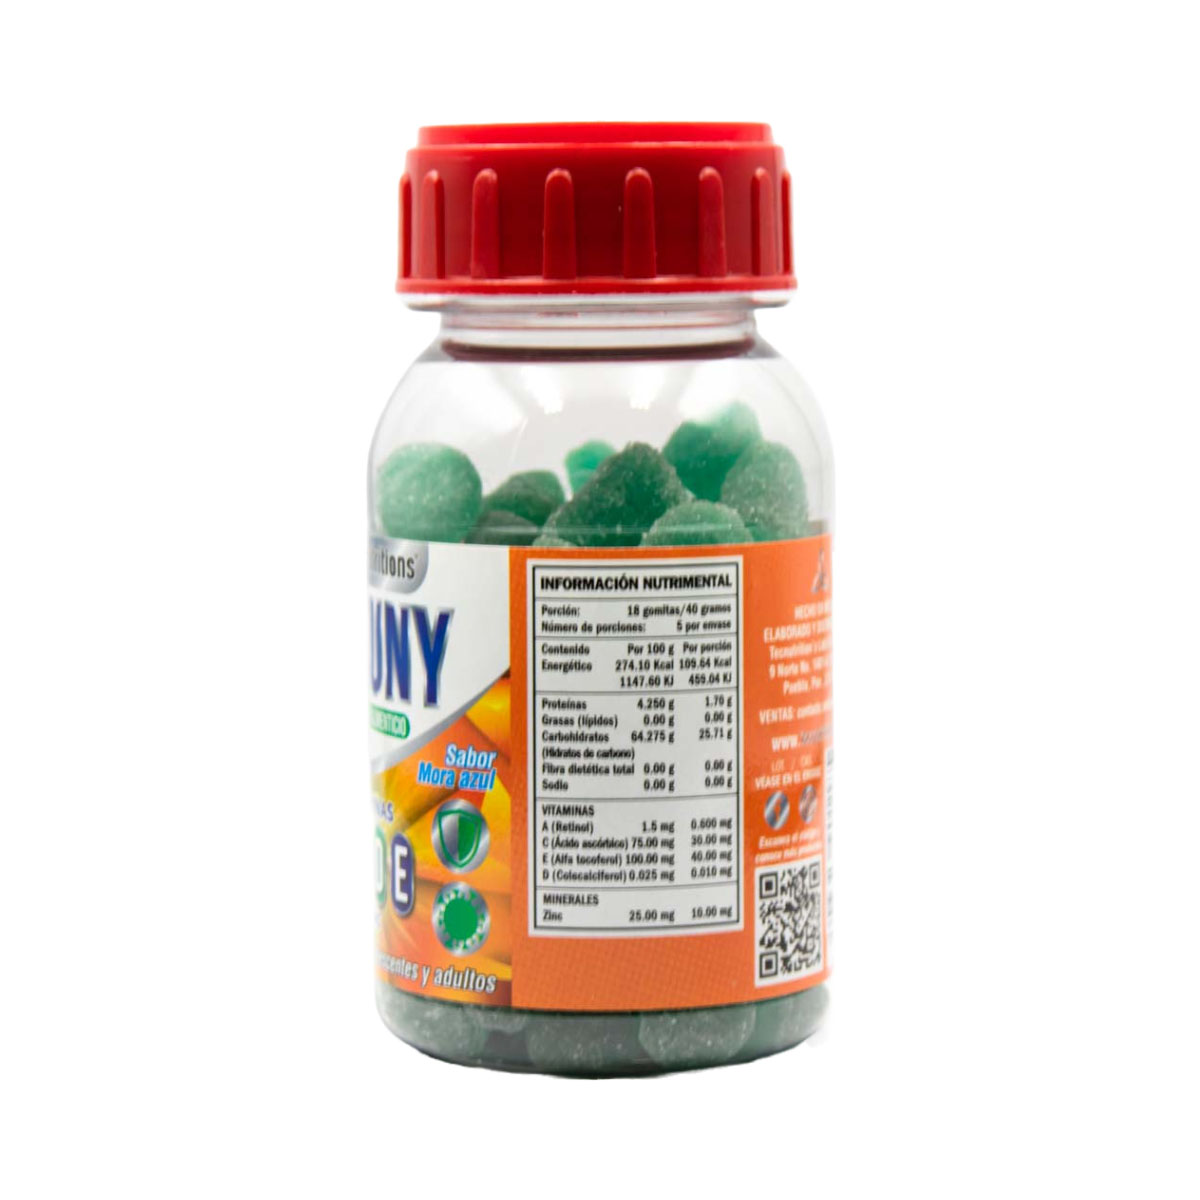 Suplemento alimenticio Mandarinmuny, 200 gr, con vitamina a, c, d, e, multivitamínico para adolescentes y adultos